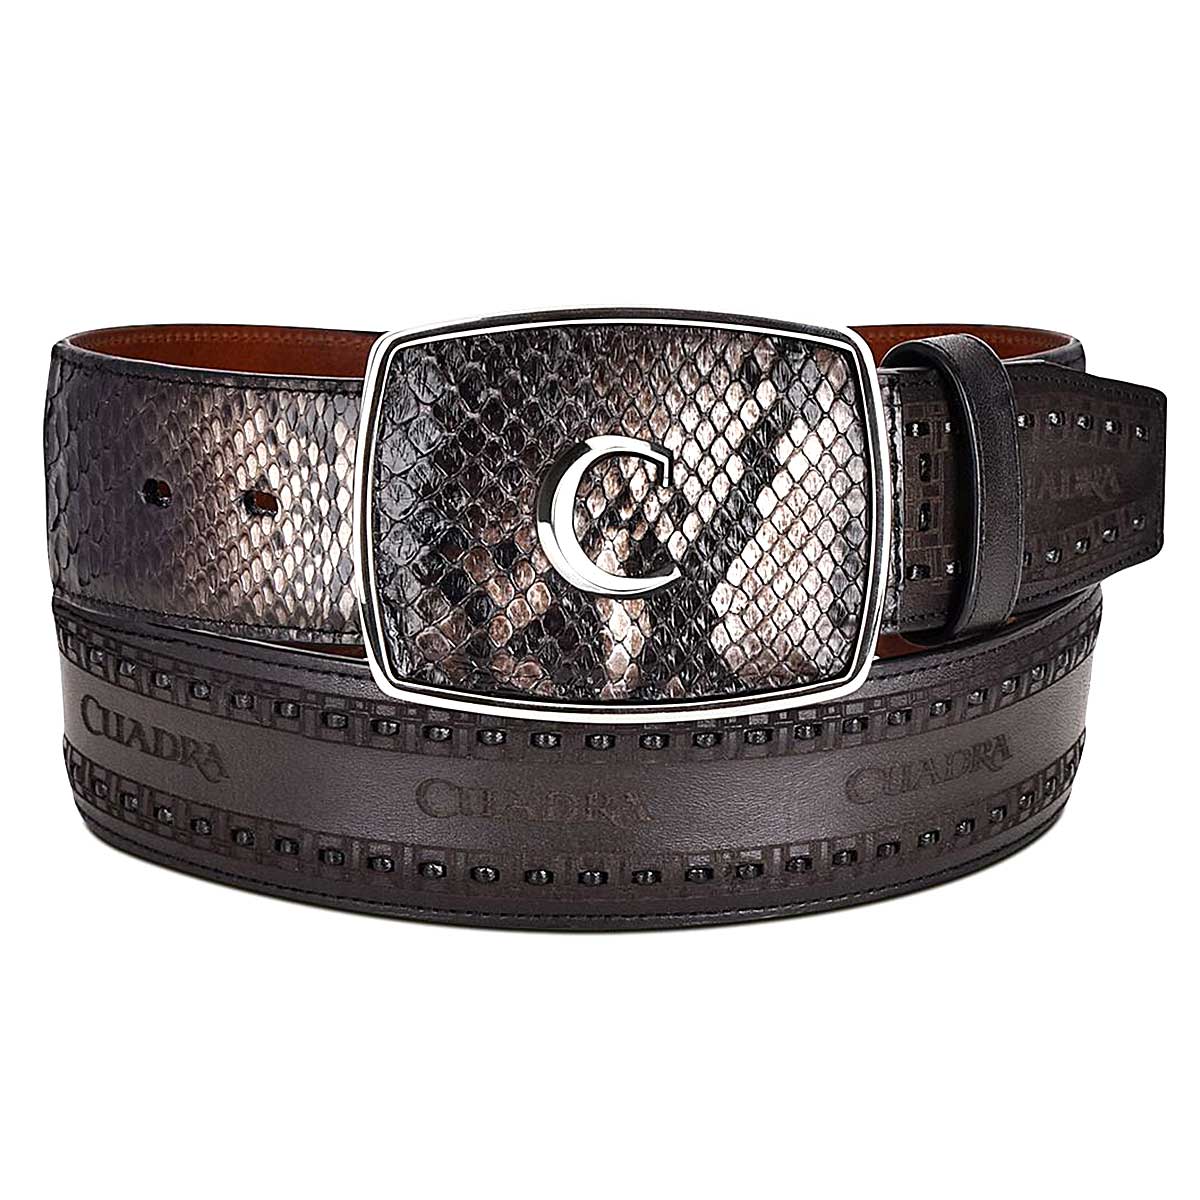 Engraved black leather western belt